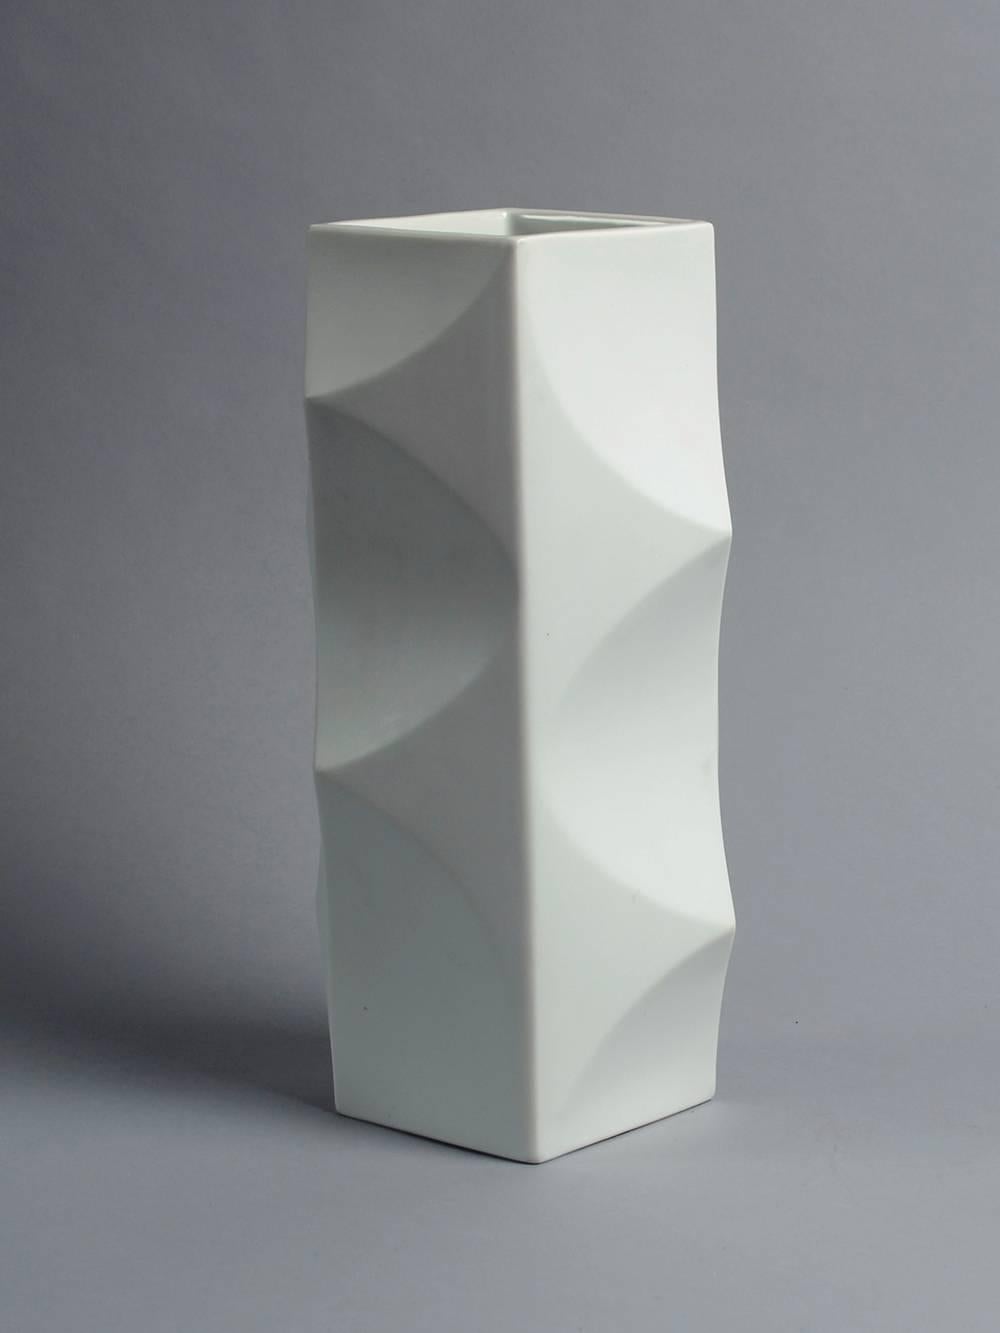 Heinrich Fuchs for Lorenz Hutschenreuther, Germany.

"Archais" porcelain vase with matte white glaze, 1960s.
Height 11 1/4" (28.5cm) Width 4 3/4" (12cm) Depth 4 3/4" (12cm)
Printed "Lorenz Hutschenreuther